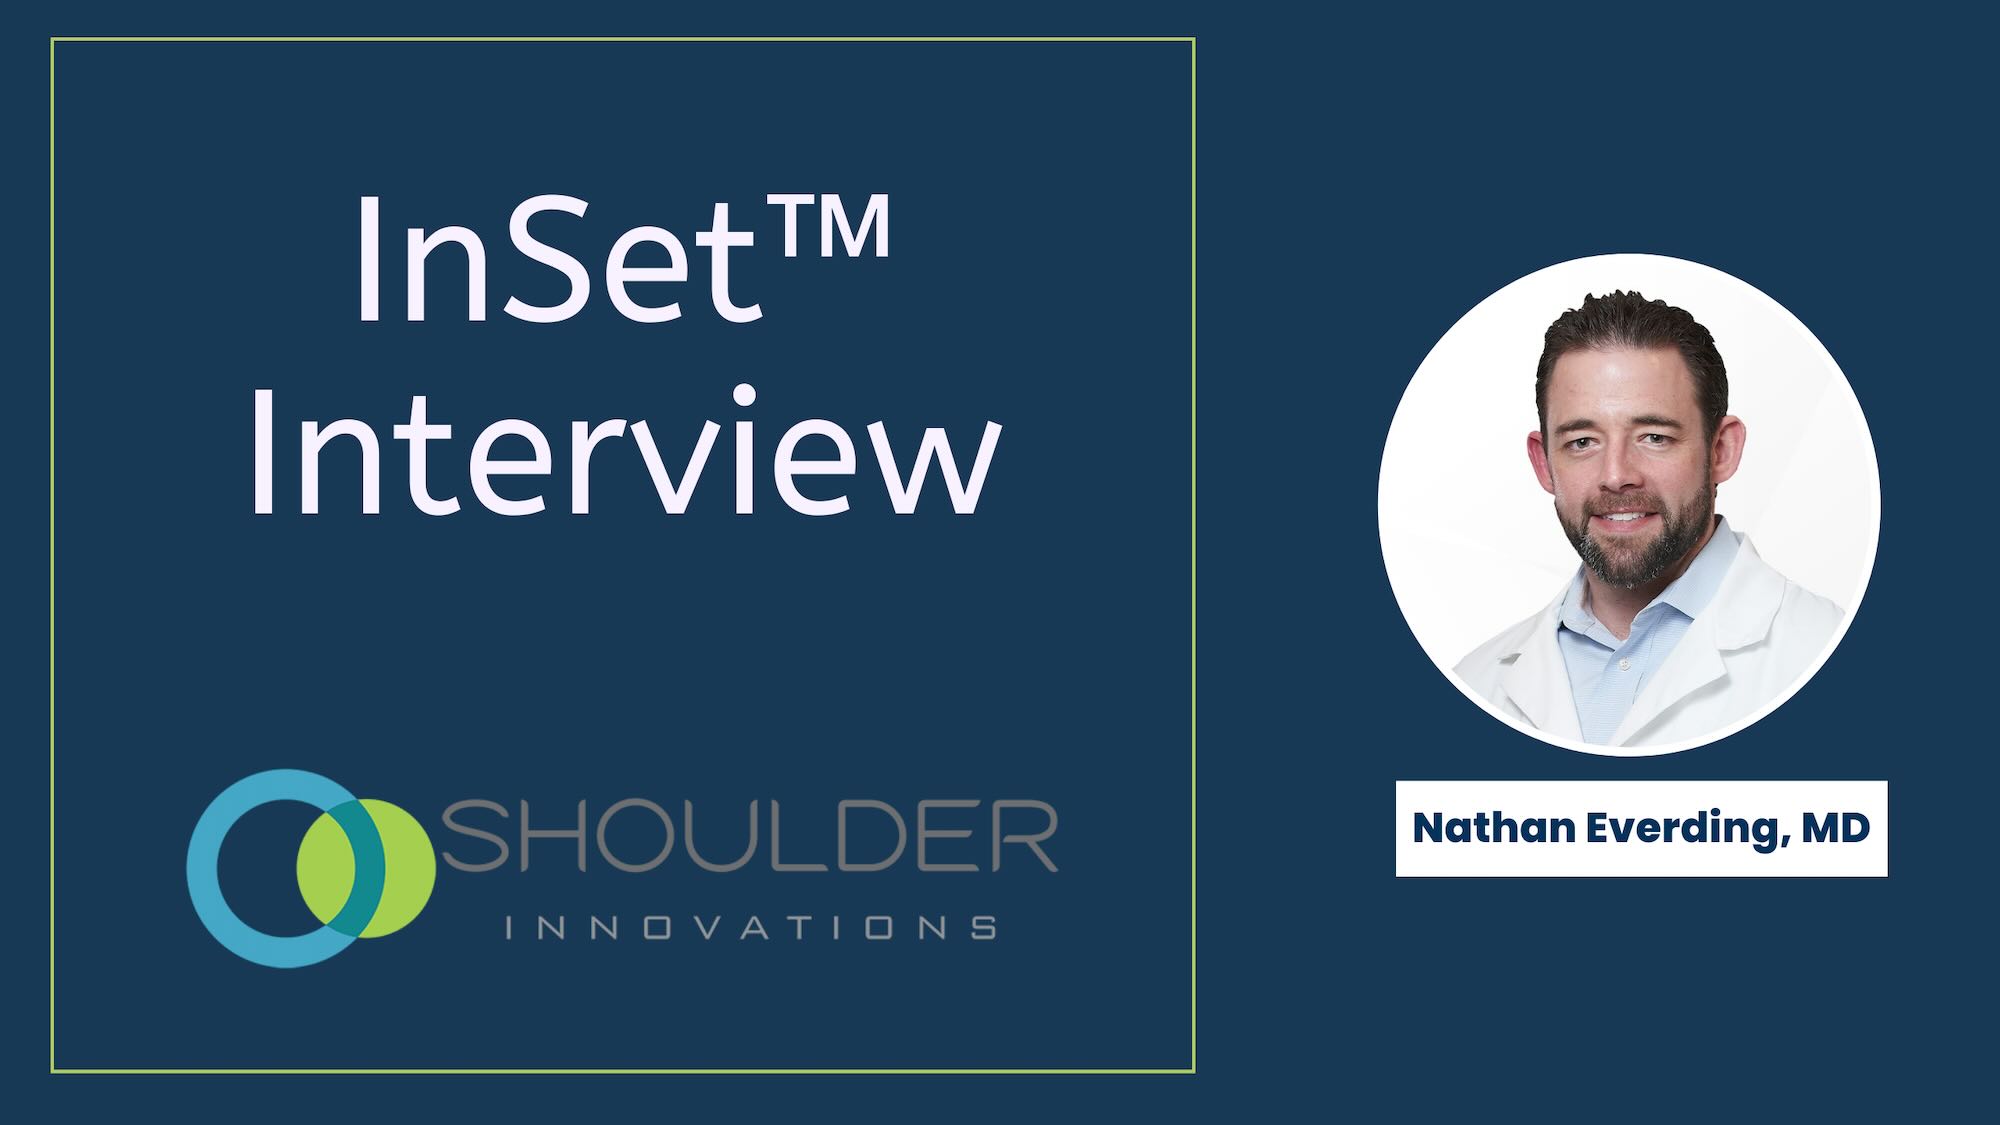 Dr. Nathan Everding shoulder interview